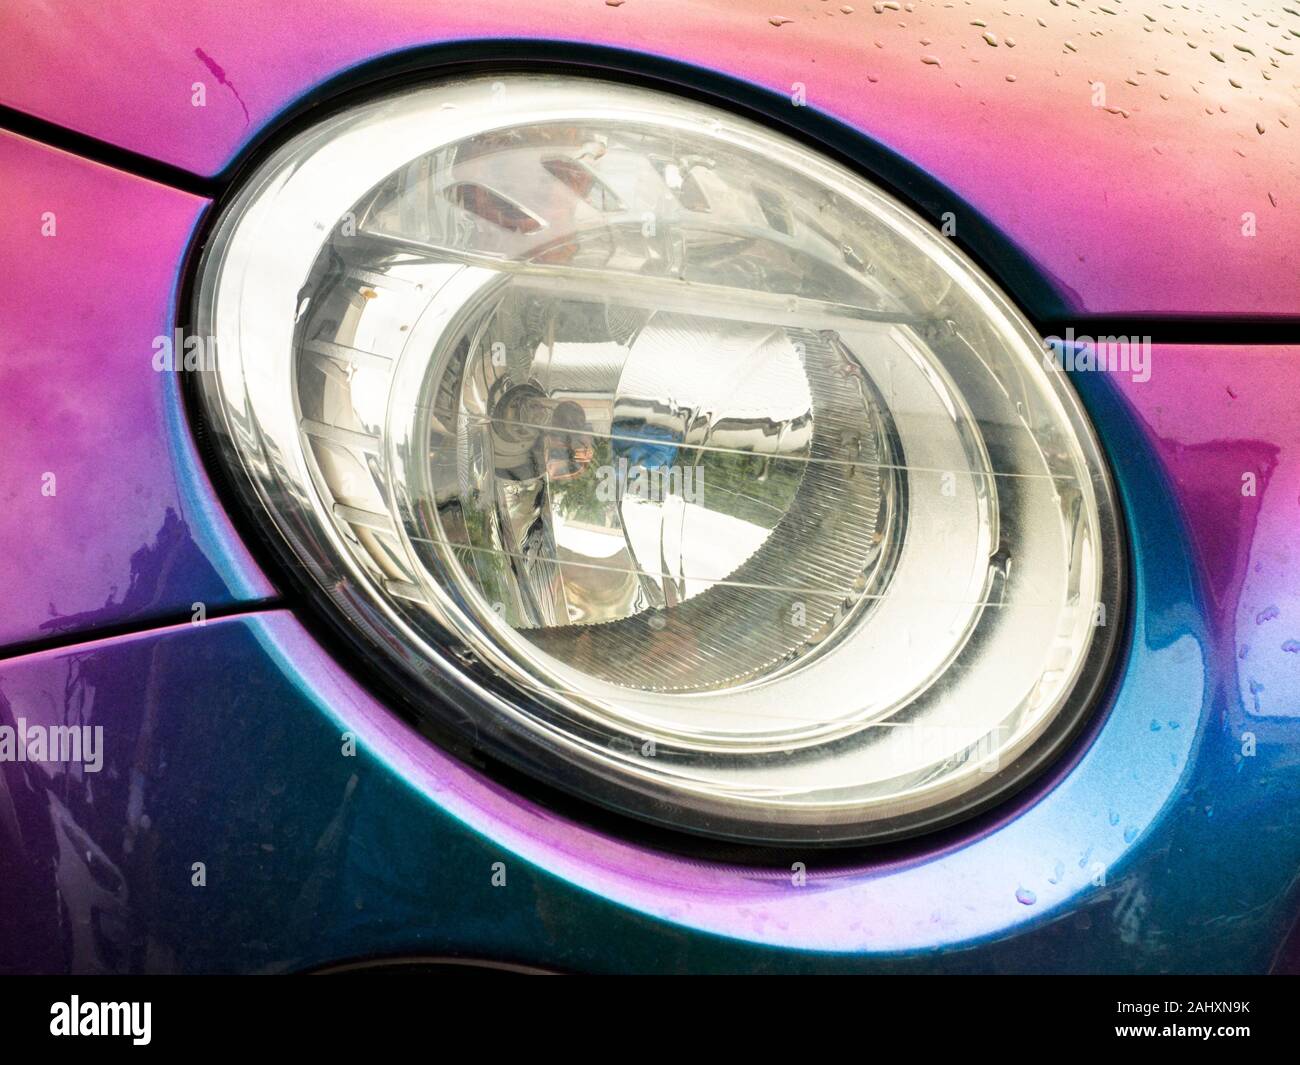 La lumière d'une voiture Fiat 500 - Italie Banque D'Images